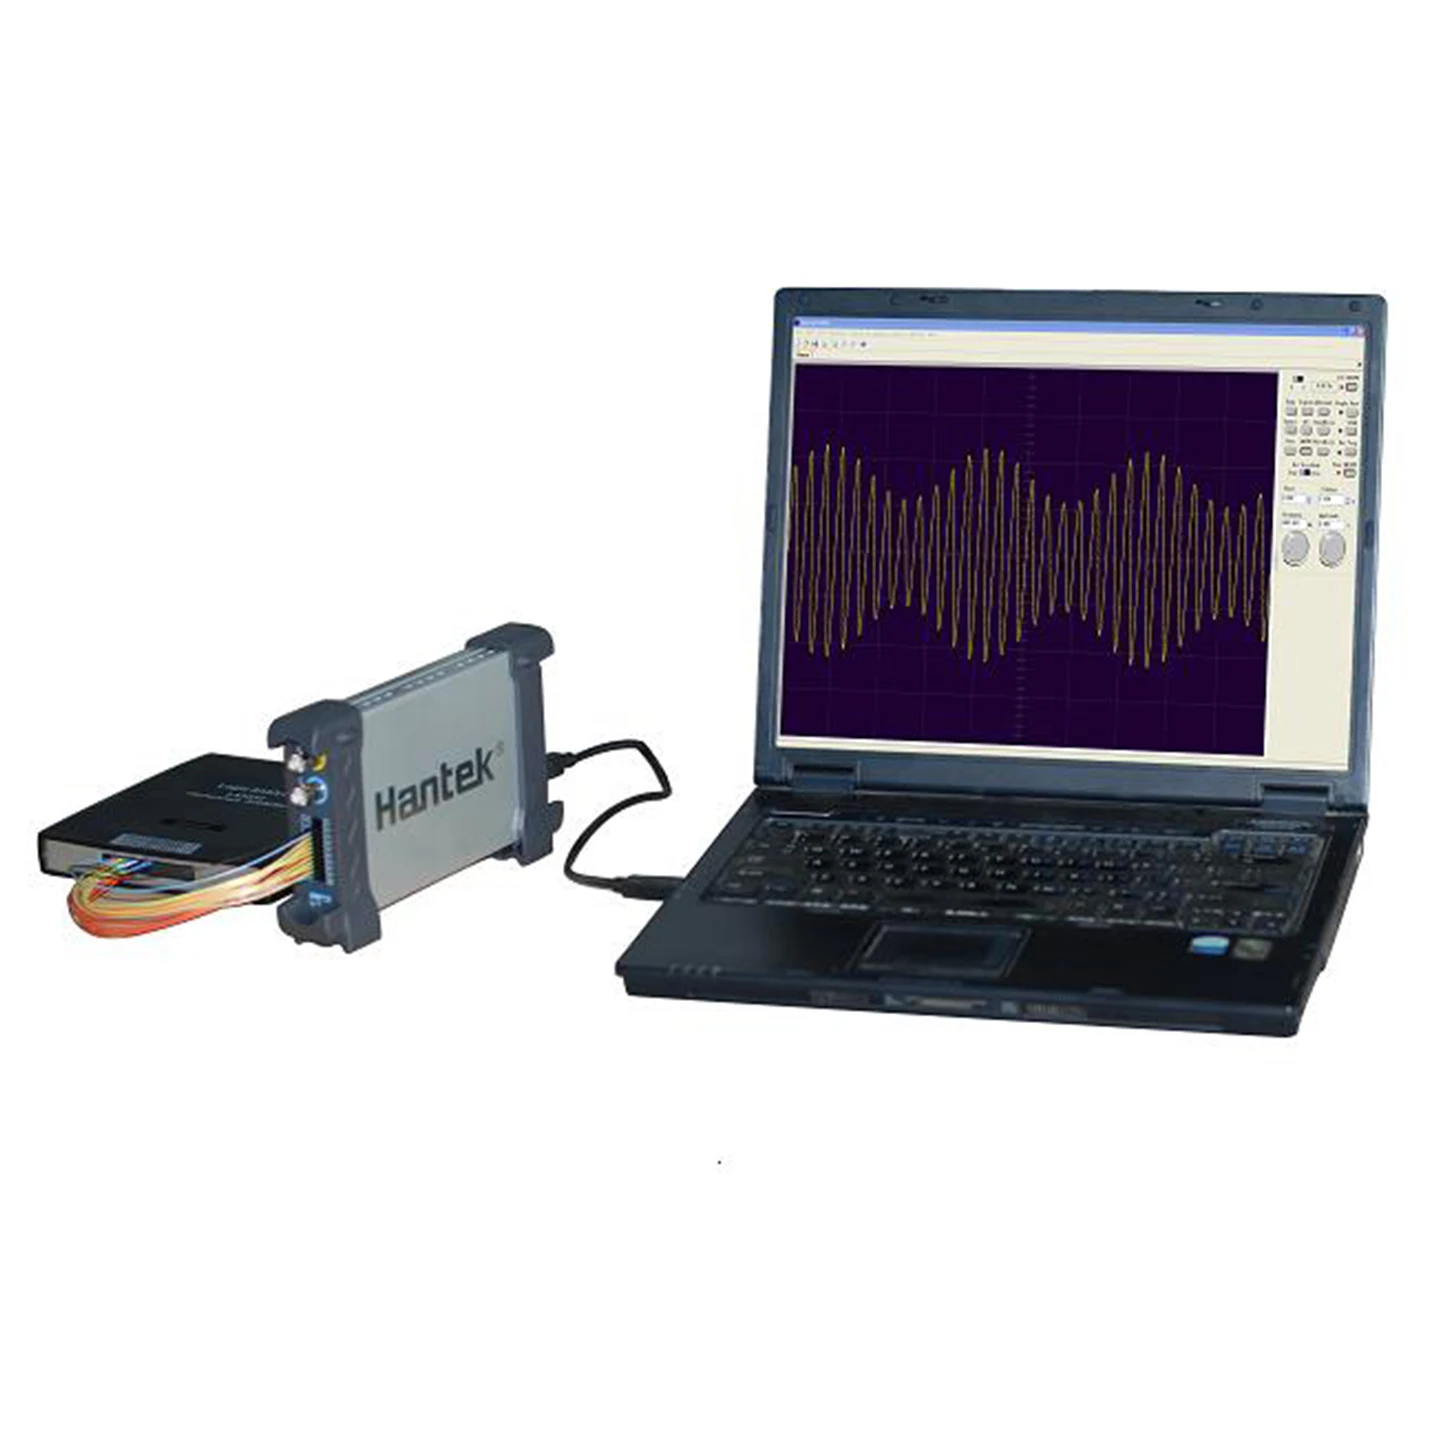 

1025G ПК функция USB/произвольный генератор сигналов Hantek 1025G 25MHz Arb. Интерфейс Wave 200MSa/s DDS USBXITM